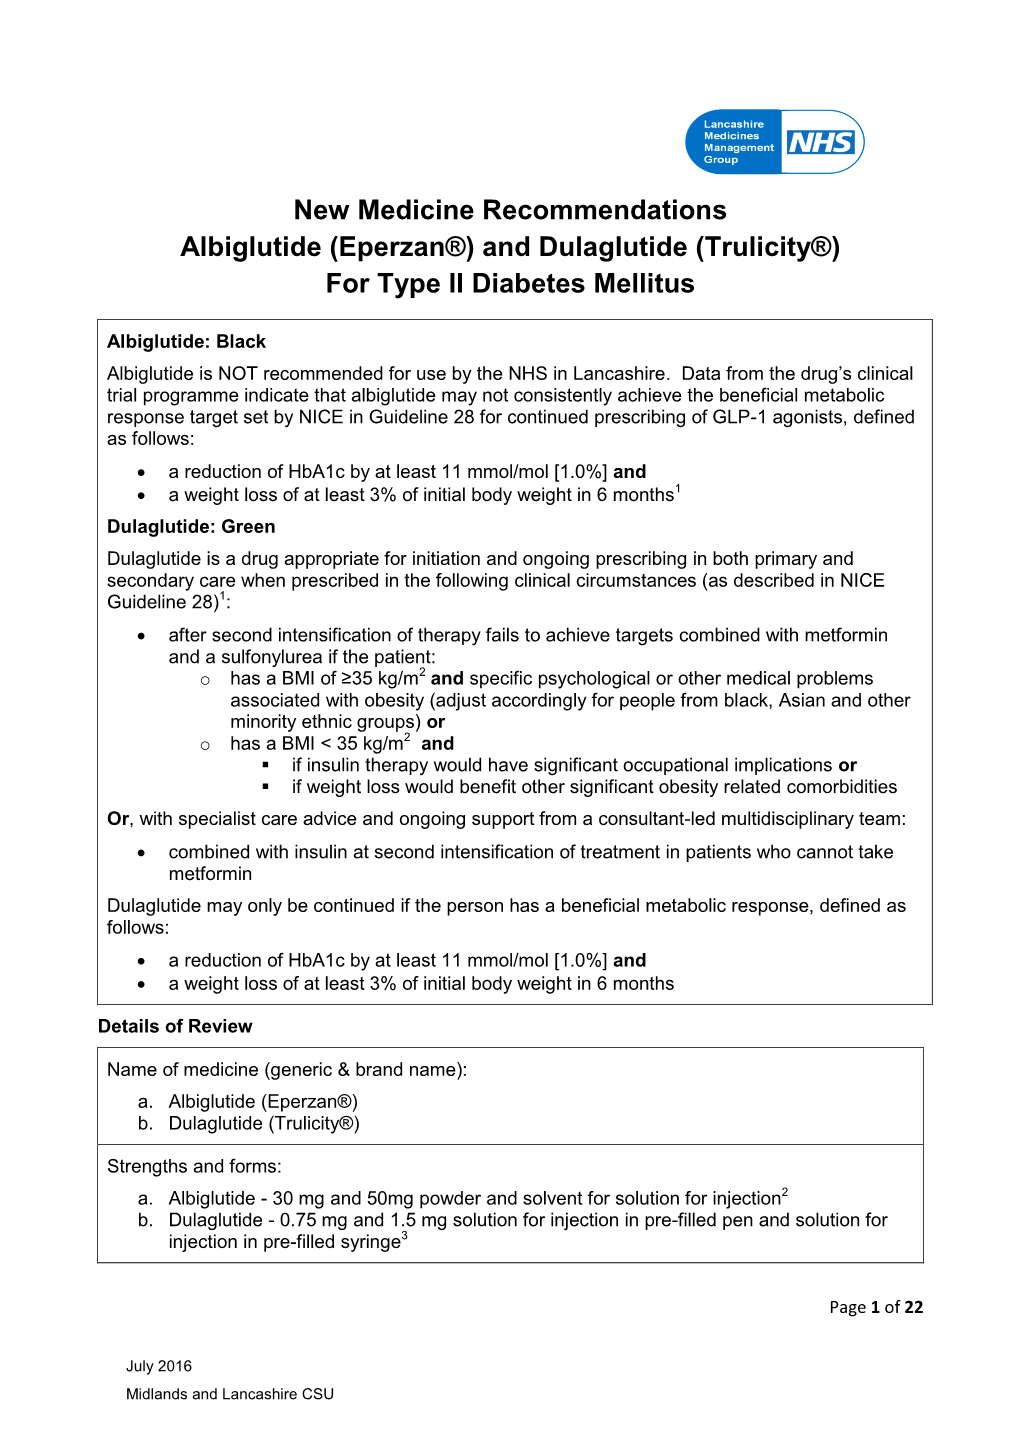 Abiglutide and Dulaglutide New Medicine Review